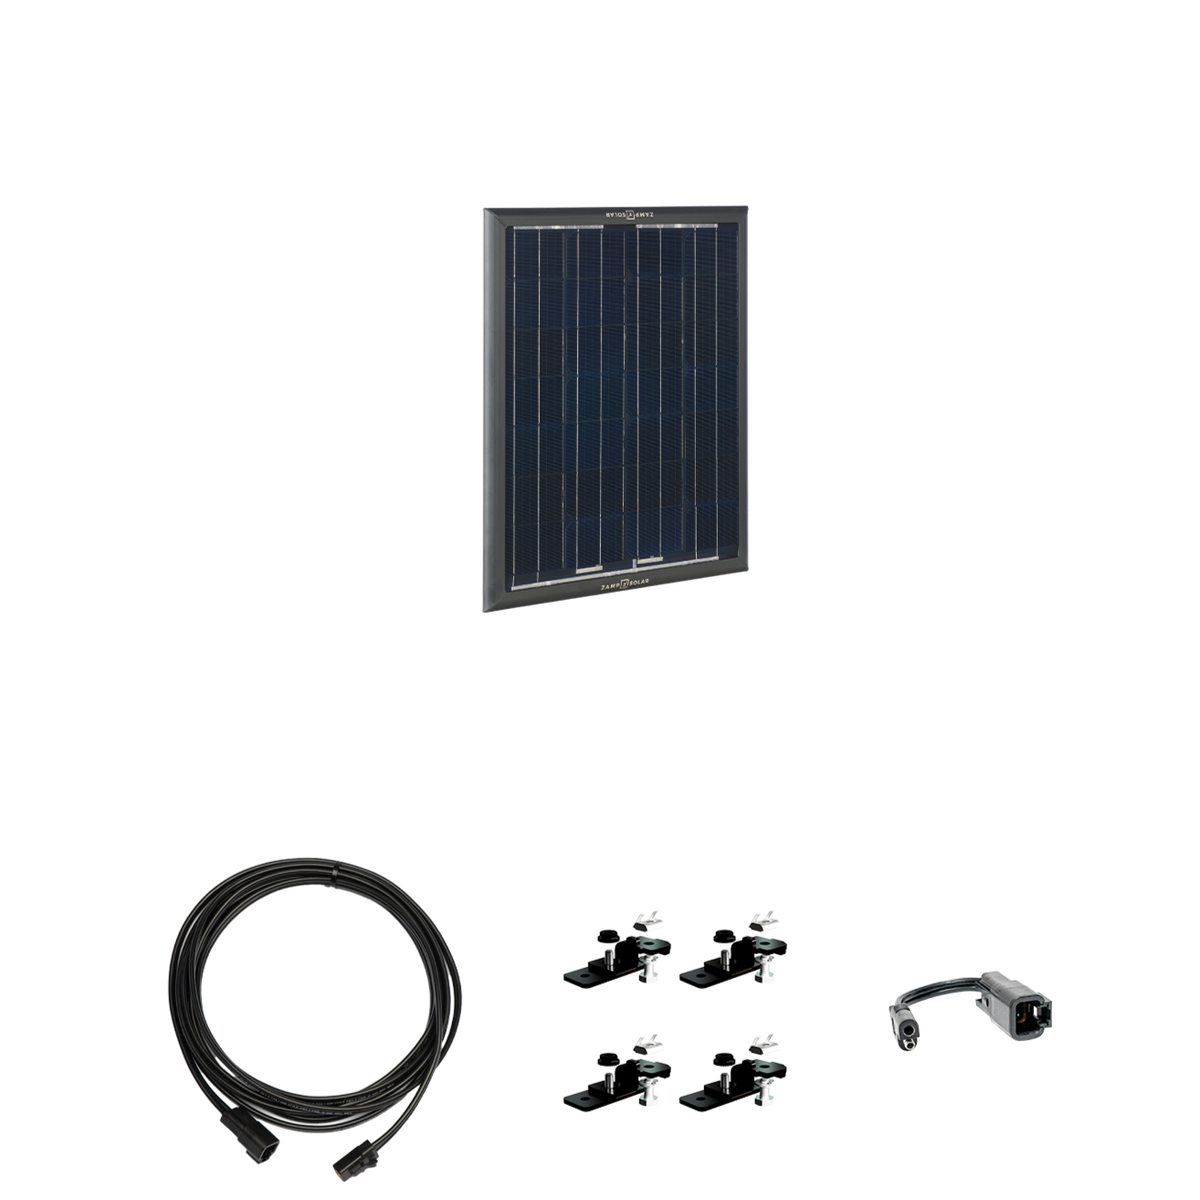 OBSIDIAN® SERIES 25 Watt Solar Panel Kit  Roof Panel Kit Zamp Solar- Overland Kitted